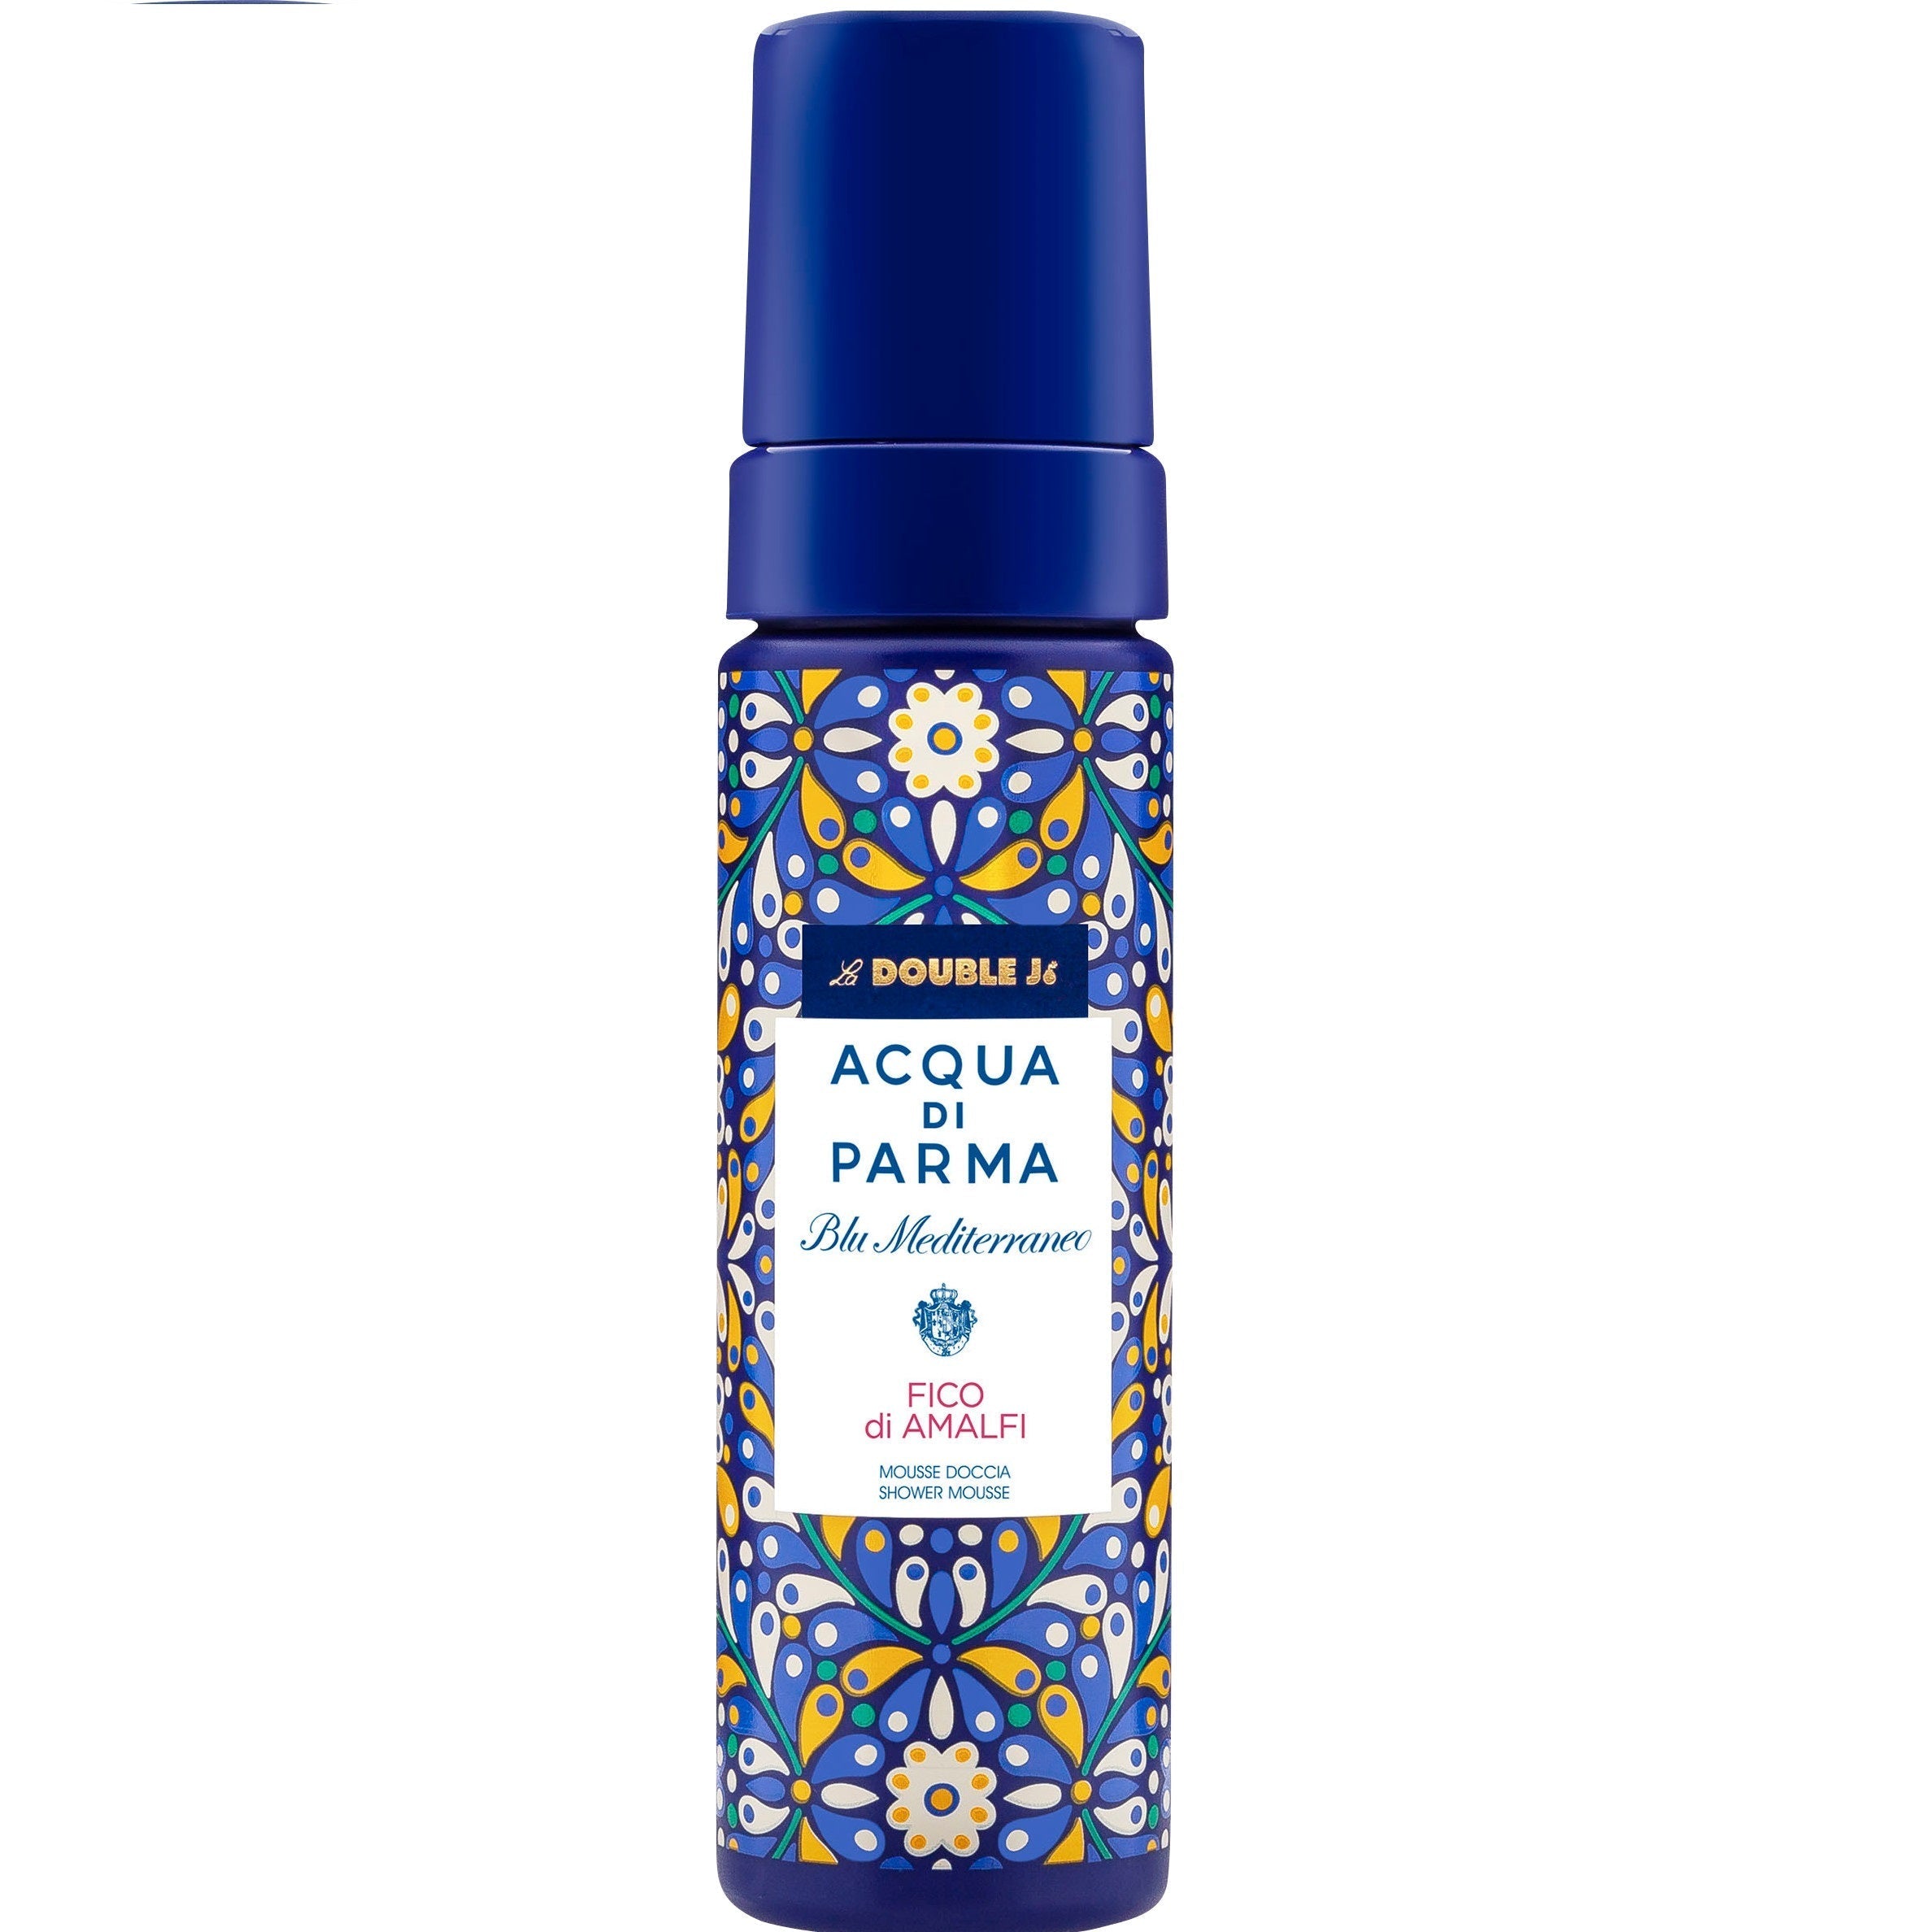 Acqua Di Parma Blu Mediterraneo Fico Di Amalfi Shower Mousse 150ml - Feel Gorgeous